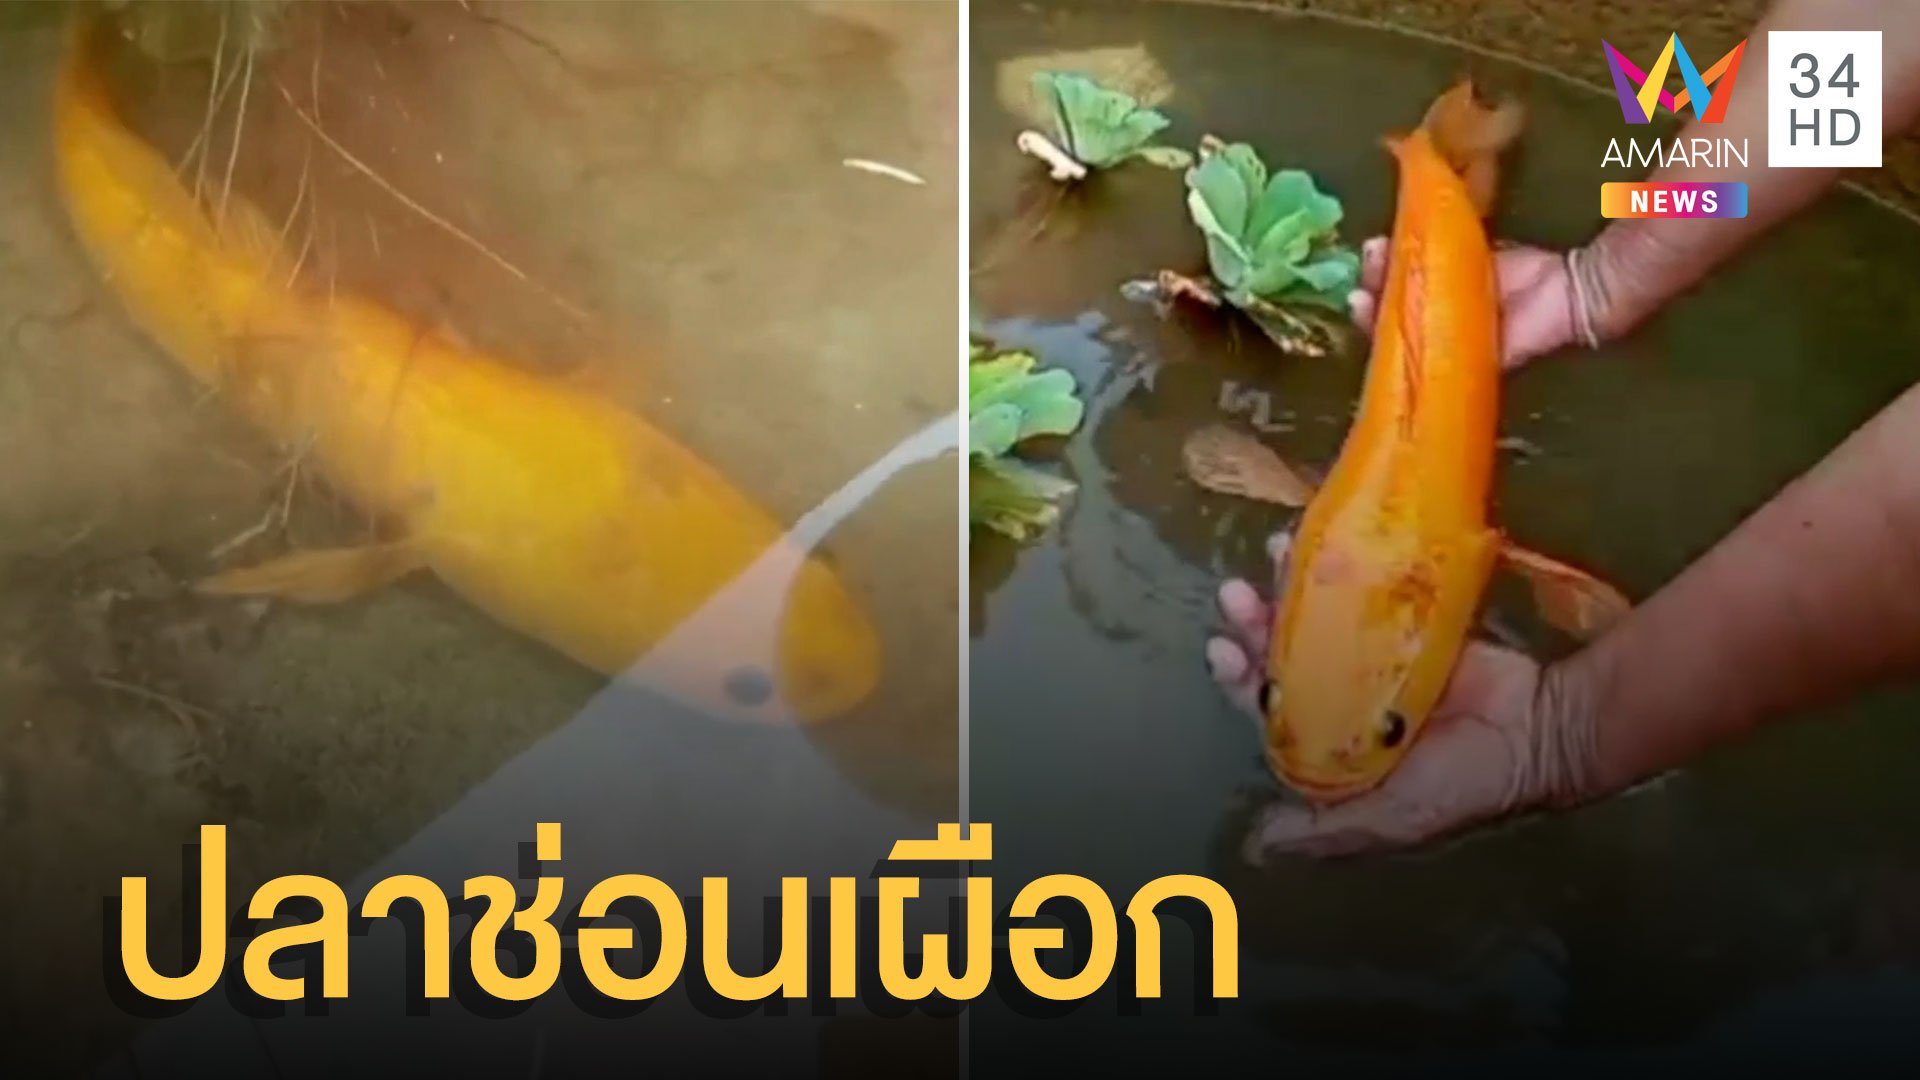 โชคดีเปลี่ยนใจไม่แกงส้มเจอ ปลาช่อนเผือก ให้โชค | ข่าวอรุณอมรินทร์ | 8 มิ.ย. 65 | AMARIN TVHD34